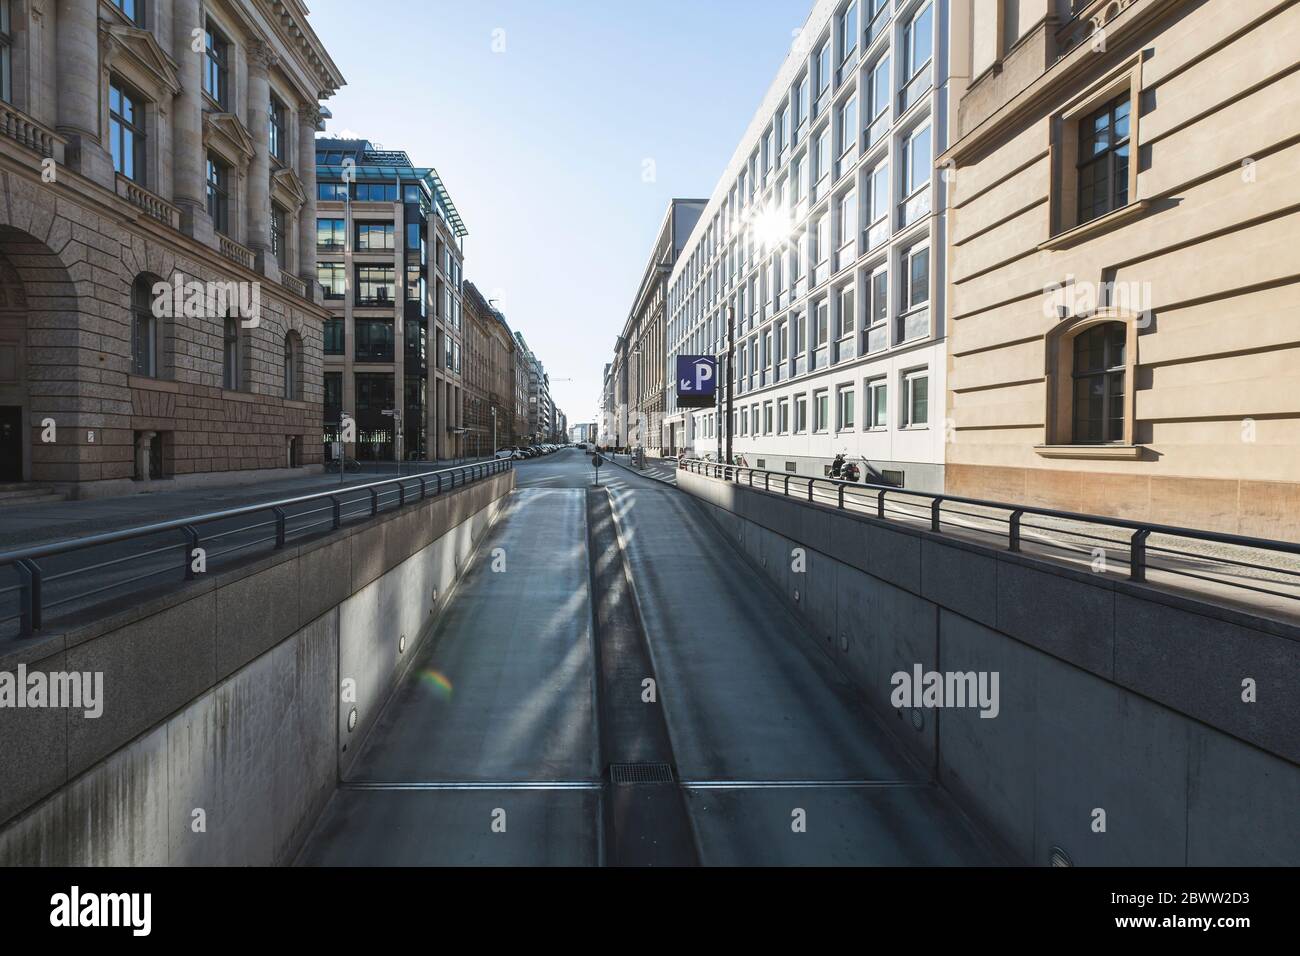 Allemagne, Berlin, rue vide de la ville pendant l'épidémie de COVID-19 Banque D'Images